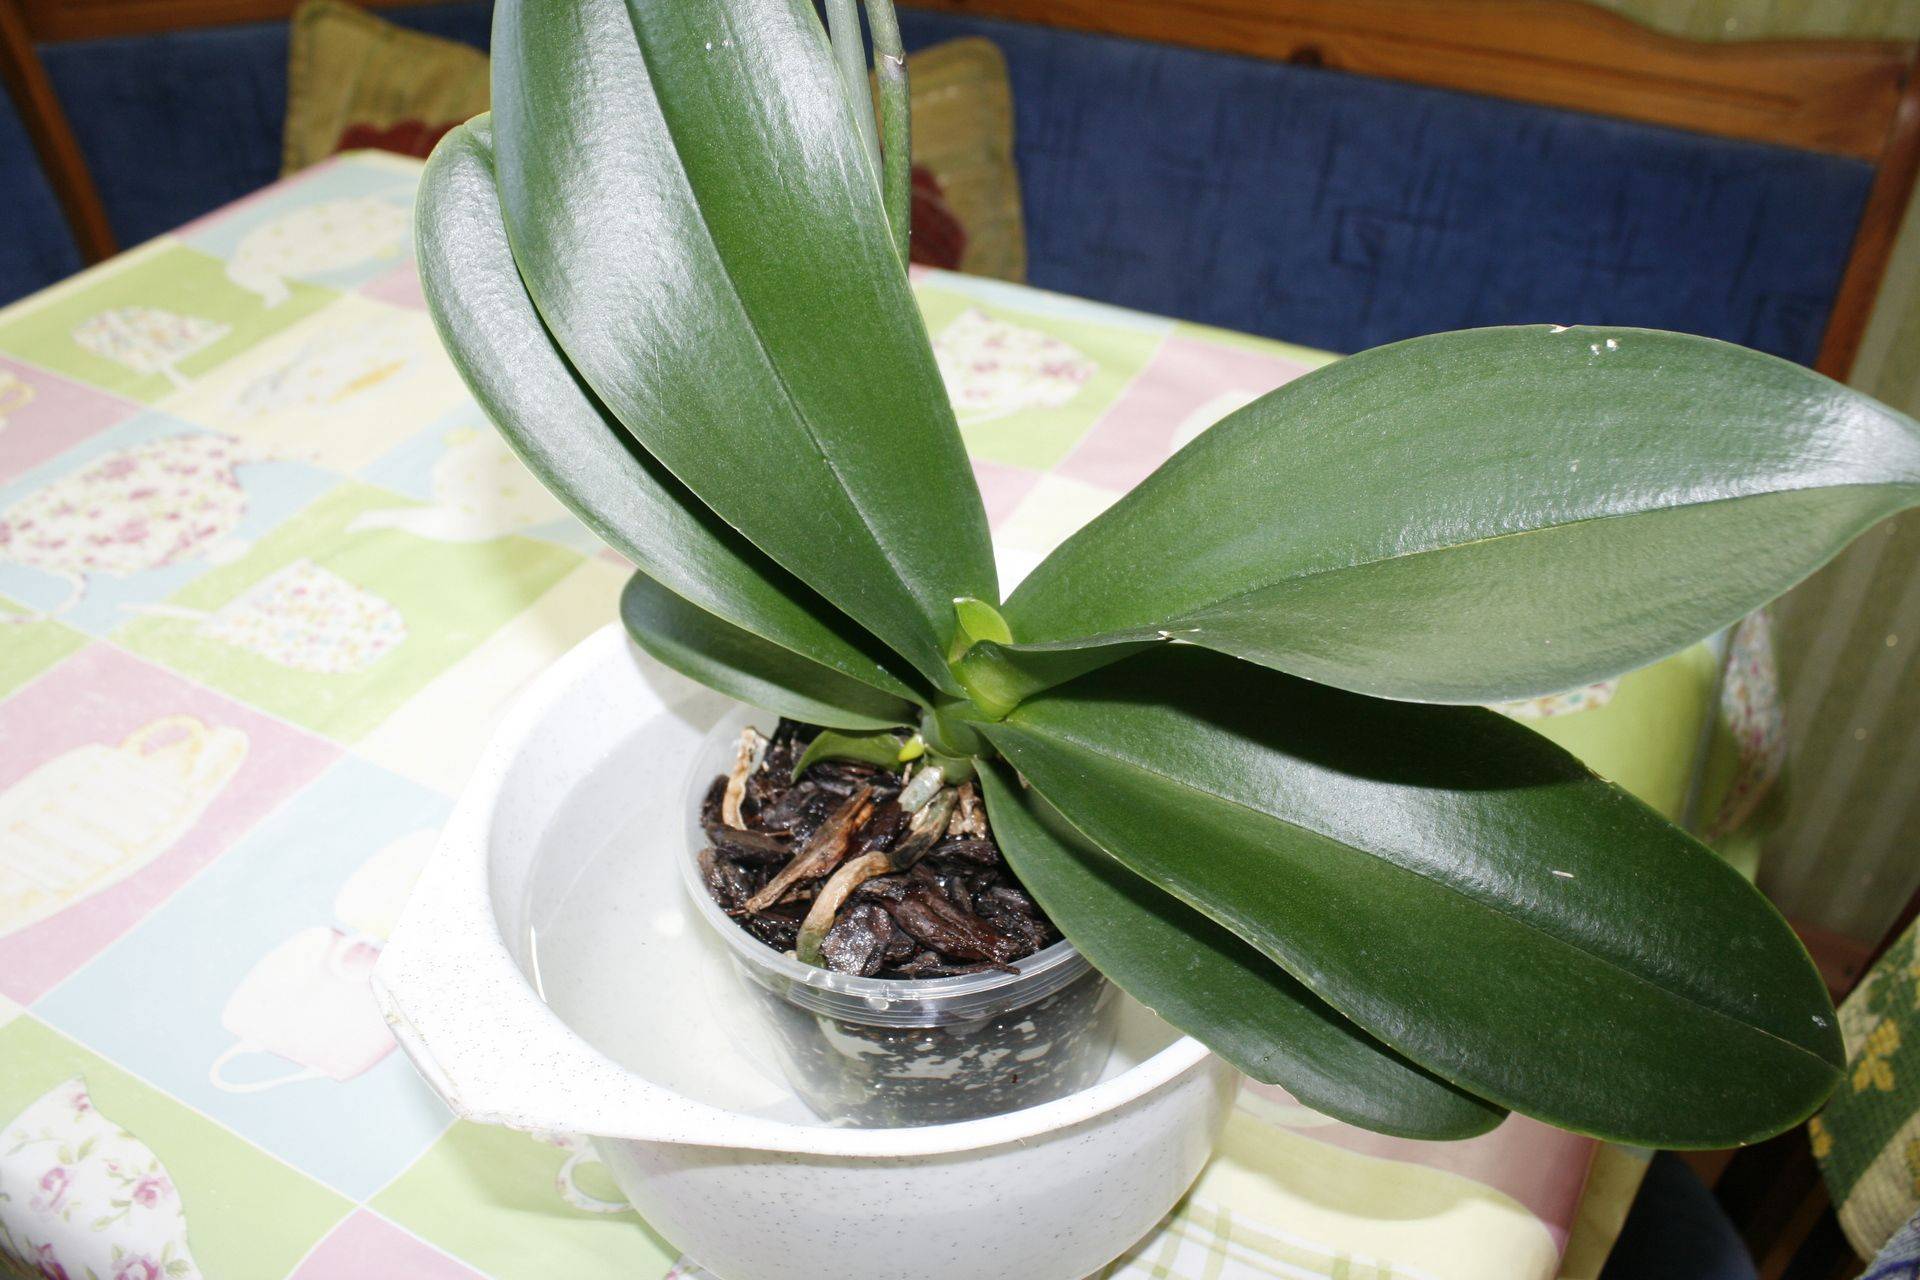 Как заставить цвести орхидею фаленопсис в домашних условиях